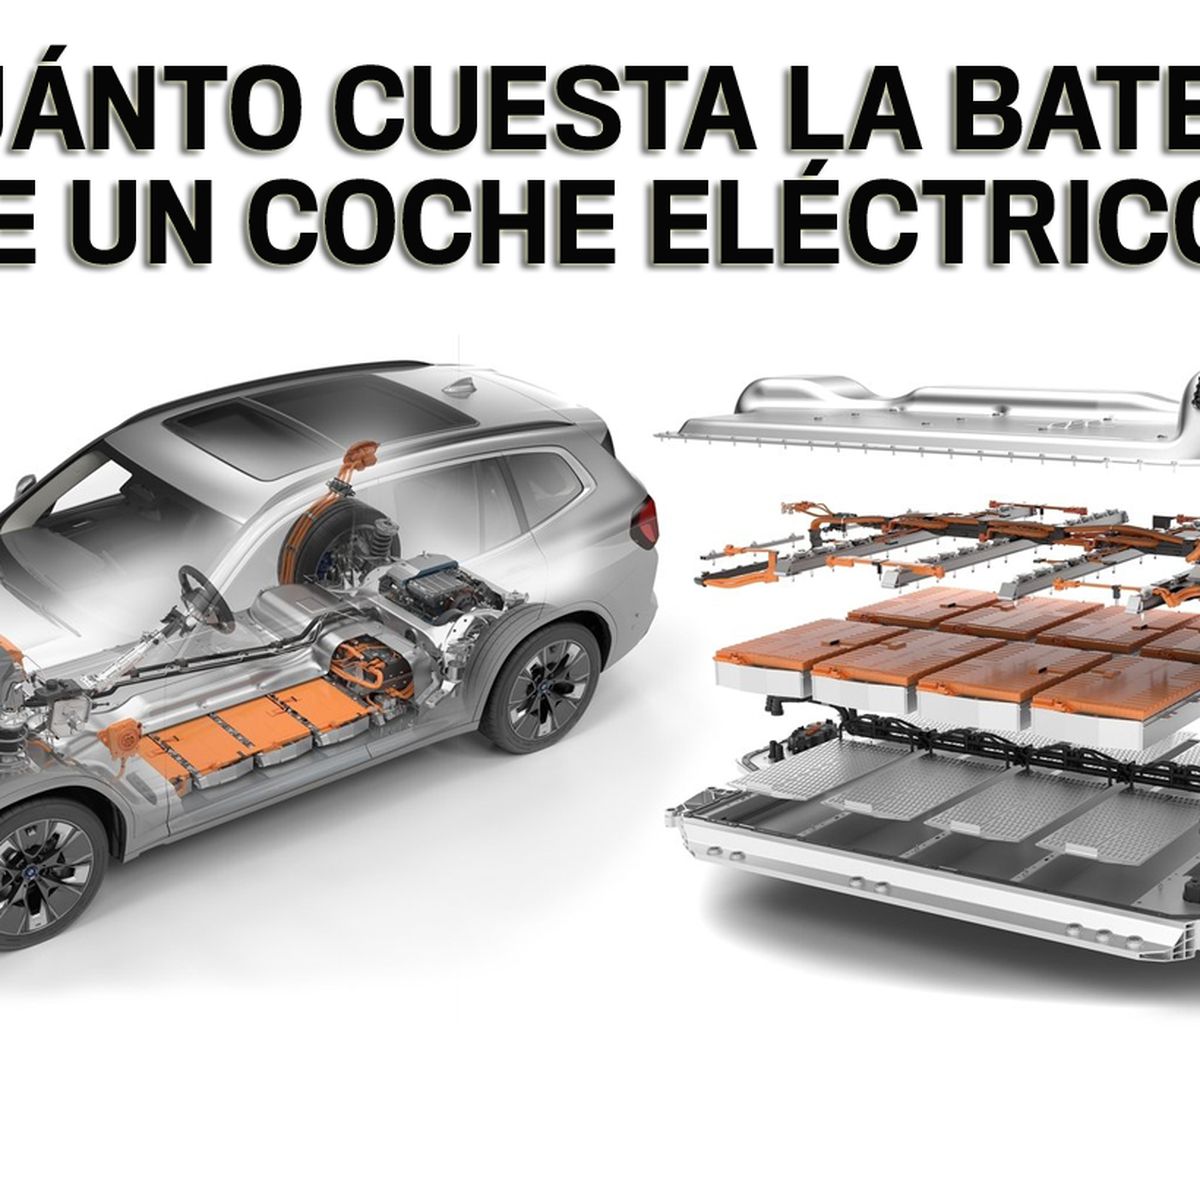 Cuánto pesa la batería de un coche eléctrico? - Tecvolución